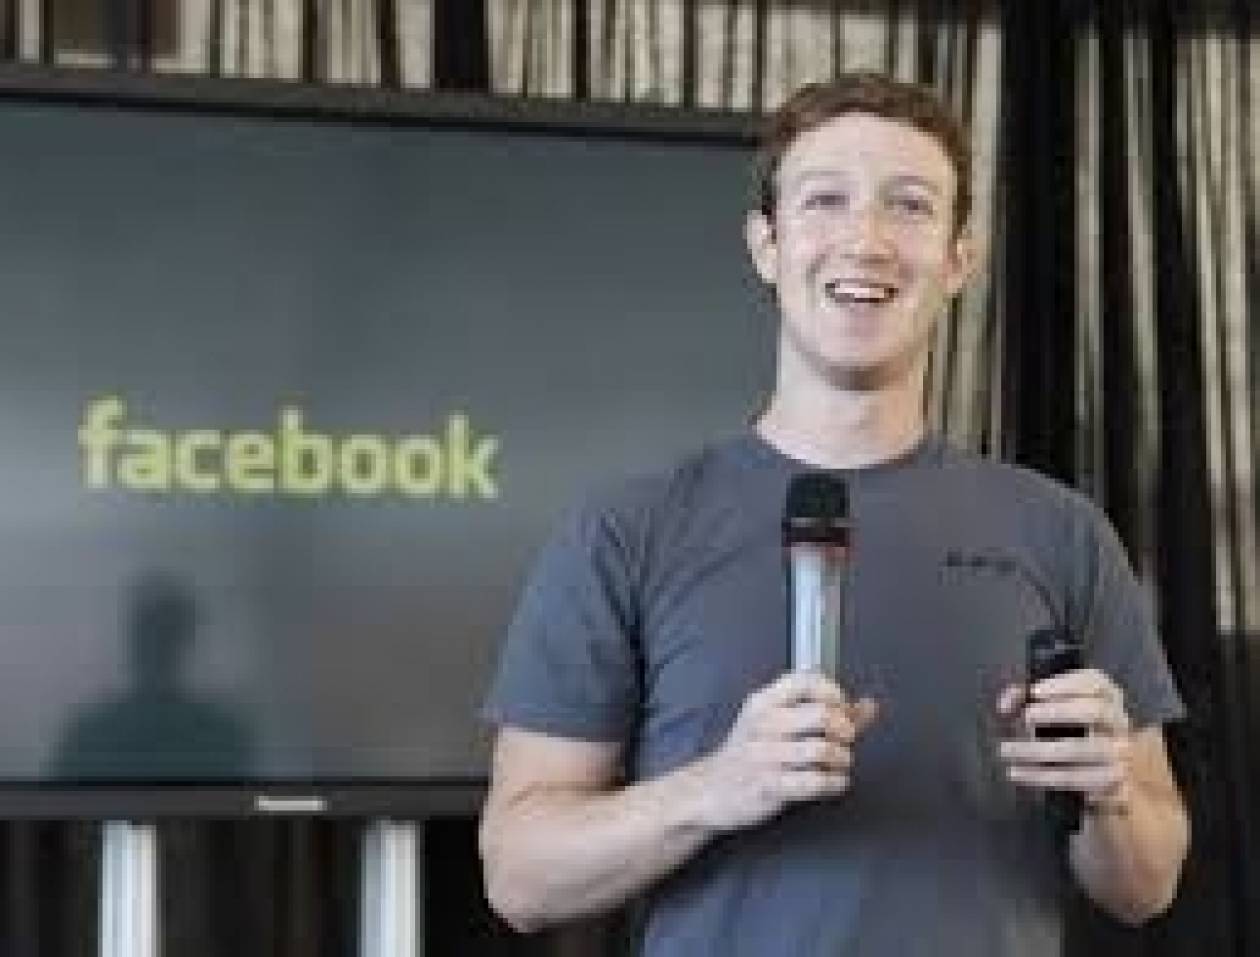 Ο Mr Facebook έκανε το 2013 τις περισσότερες δωρεές